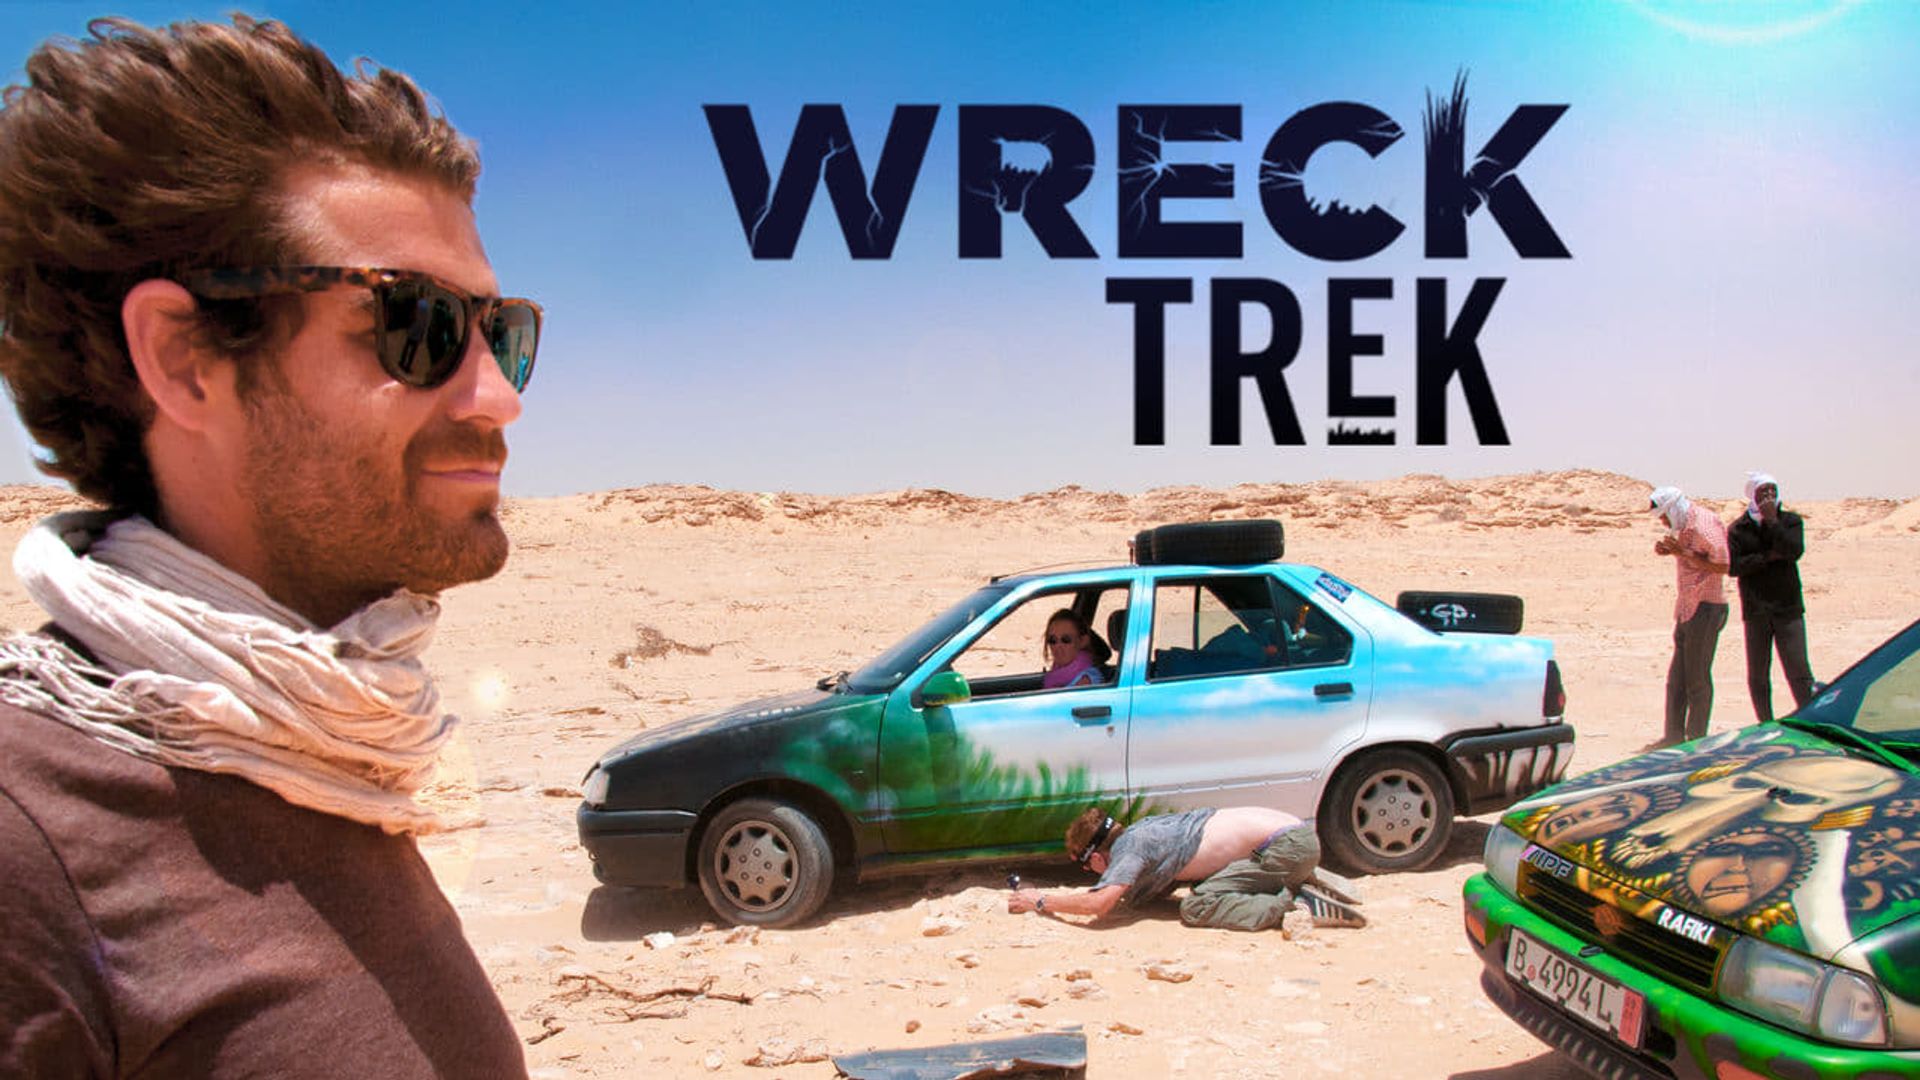 Wreck Trek Backdrop